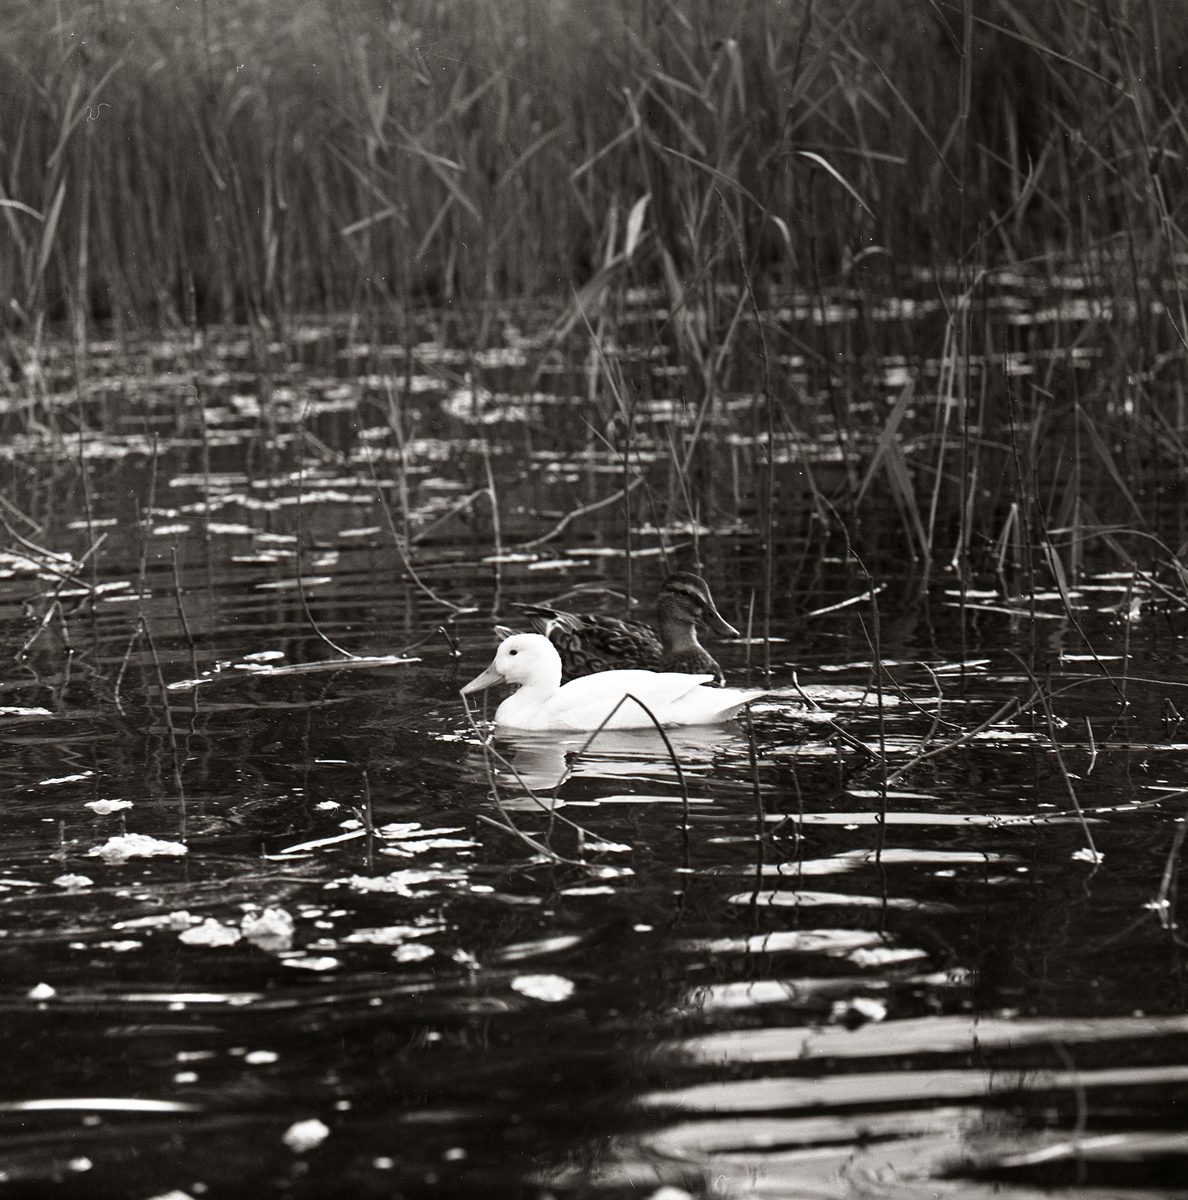 Bland vassen i en vattensamling simmar en vit and, Sörbo den 28 juli 1962.